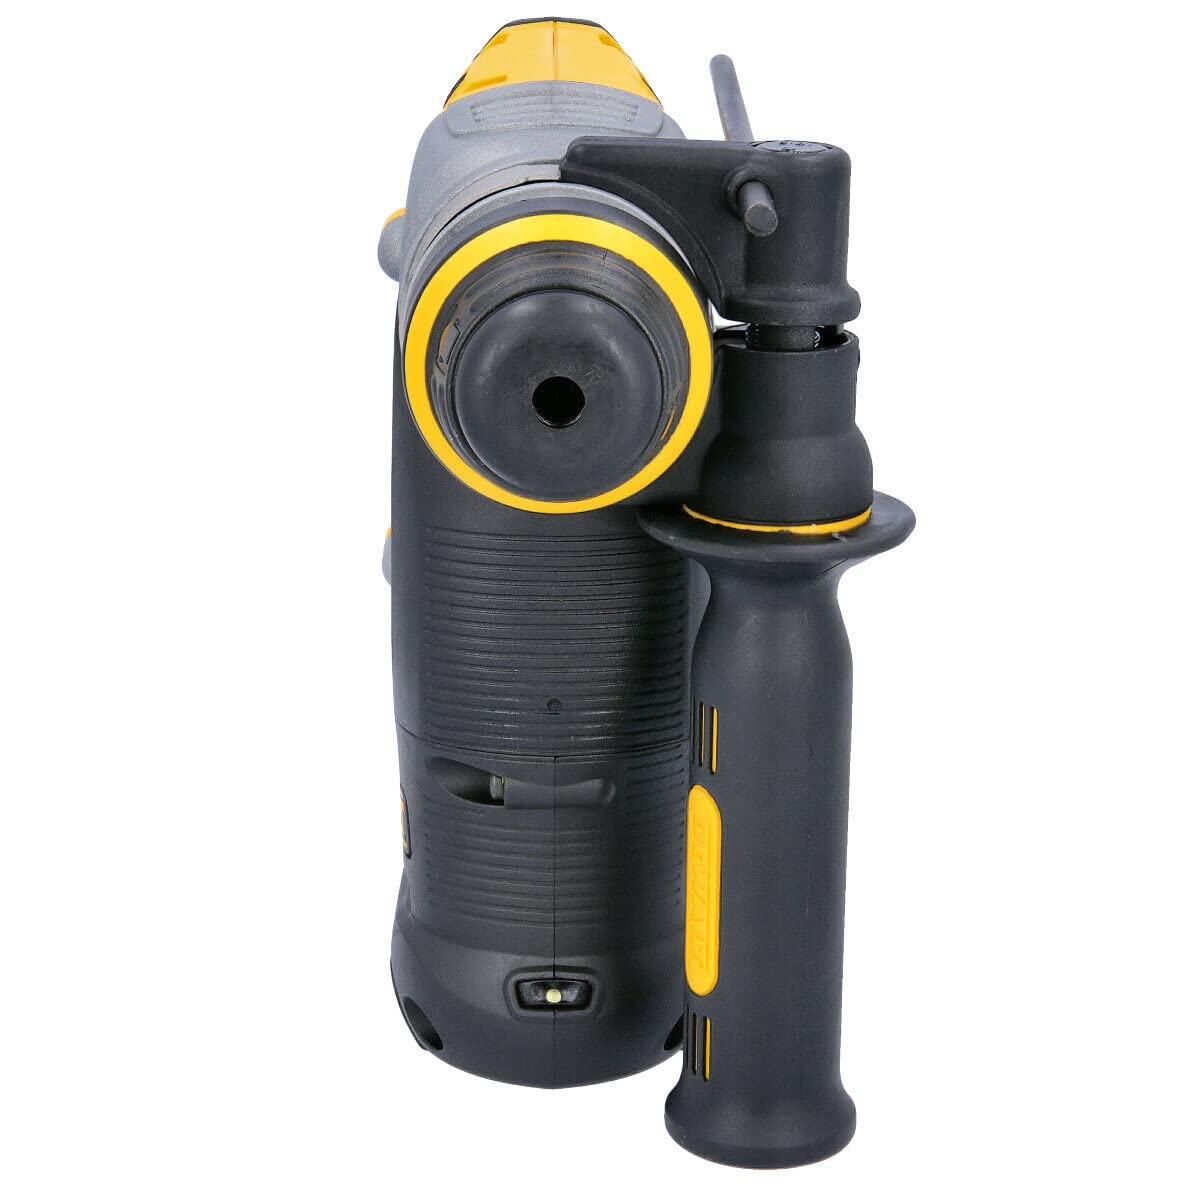 DEWALT DCH273N-XJ 18V XR Li-Ion SDS Plus Rotary Hammer Drill, 18 W, 18 V, Yellow/Black